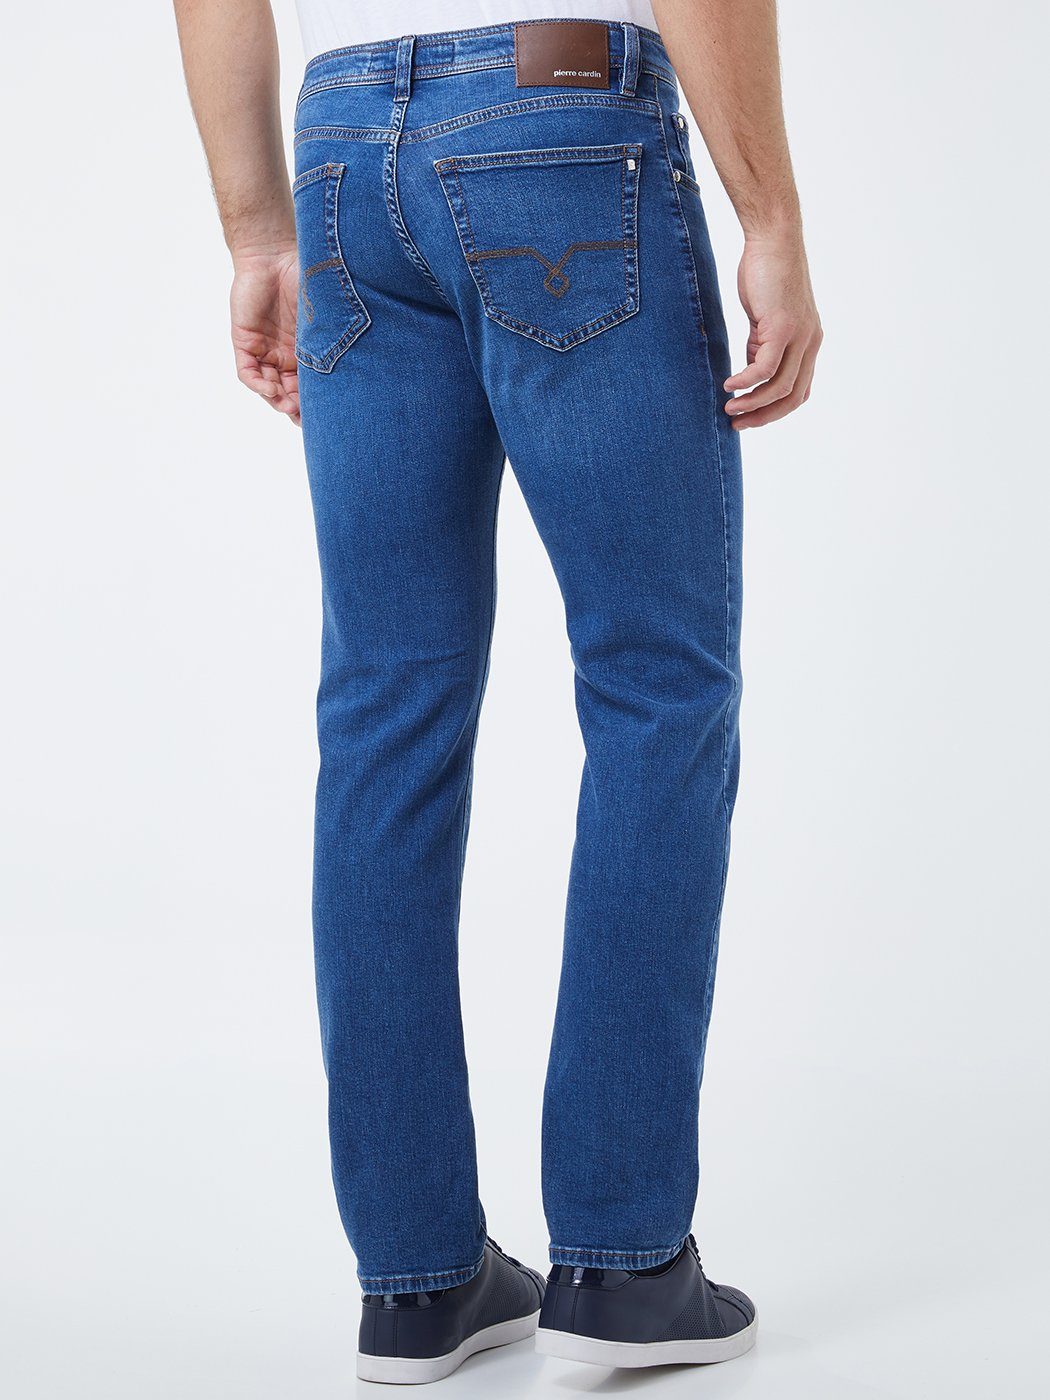 Pierre Cardin 5-Pocket-Jeans »PIERRE CARDIN DEAUVILLE mid blue 31961  7200.01 -« online kaufen | OTTO